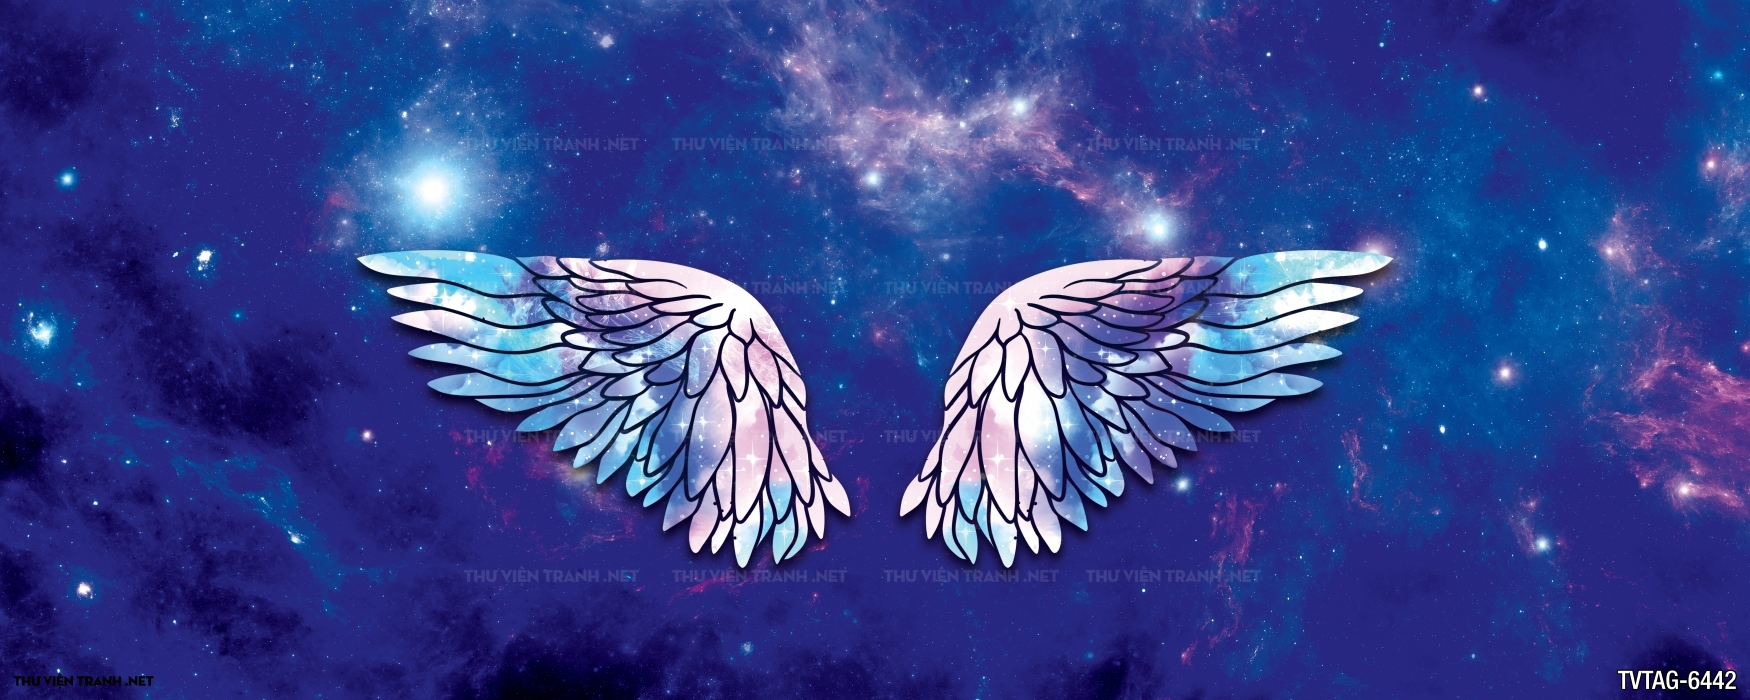 Tranh đôi cánh thiên thần